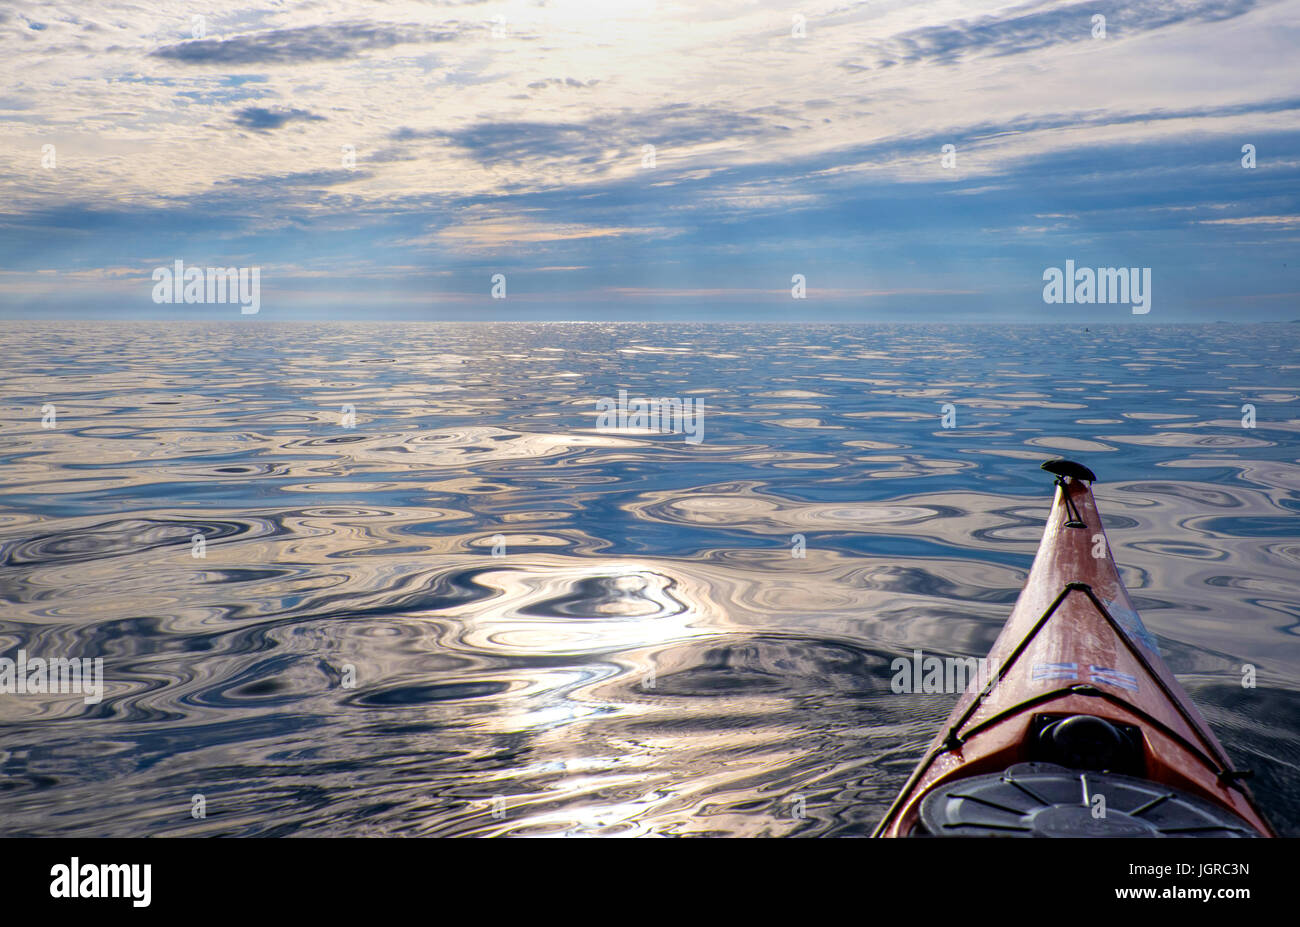 Un kayak de mar saliendo hacia un mar calmo, vacía, Anglesey, Gales, Reino Unido Foto de stock